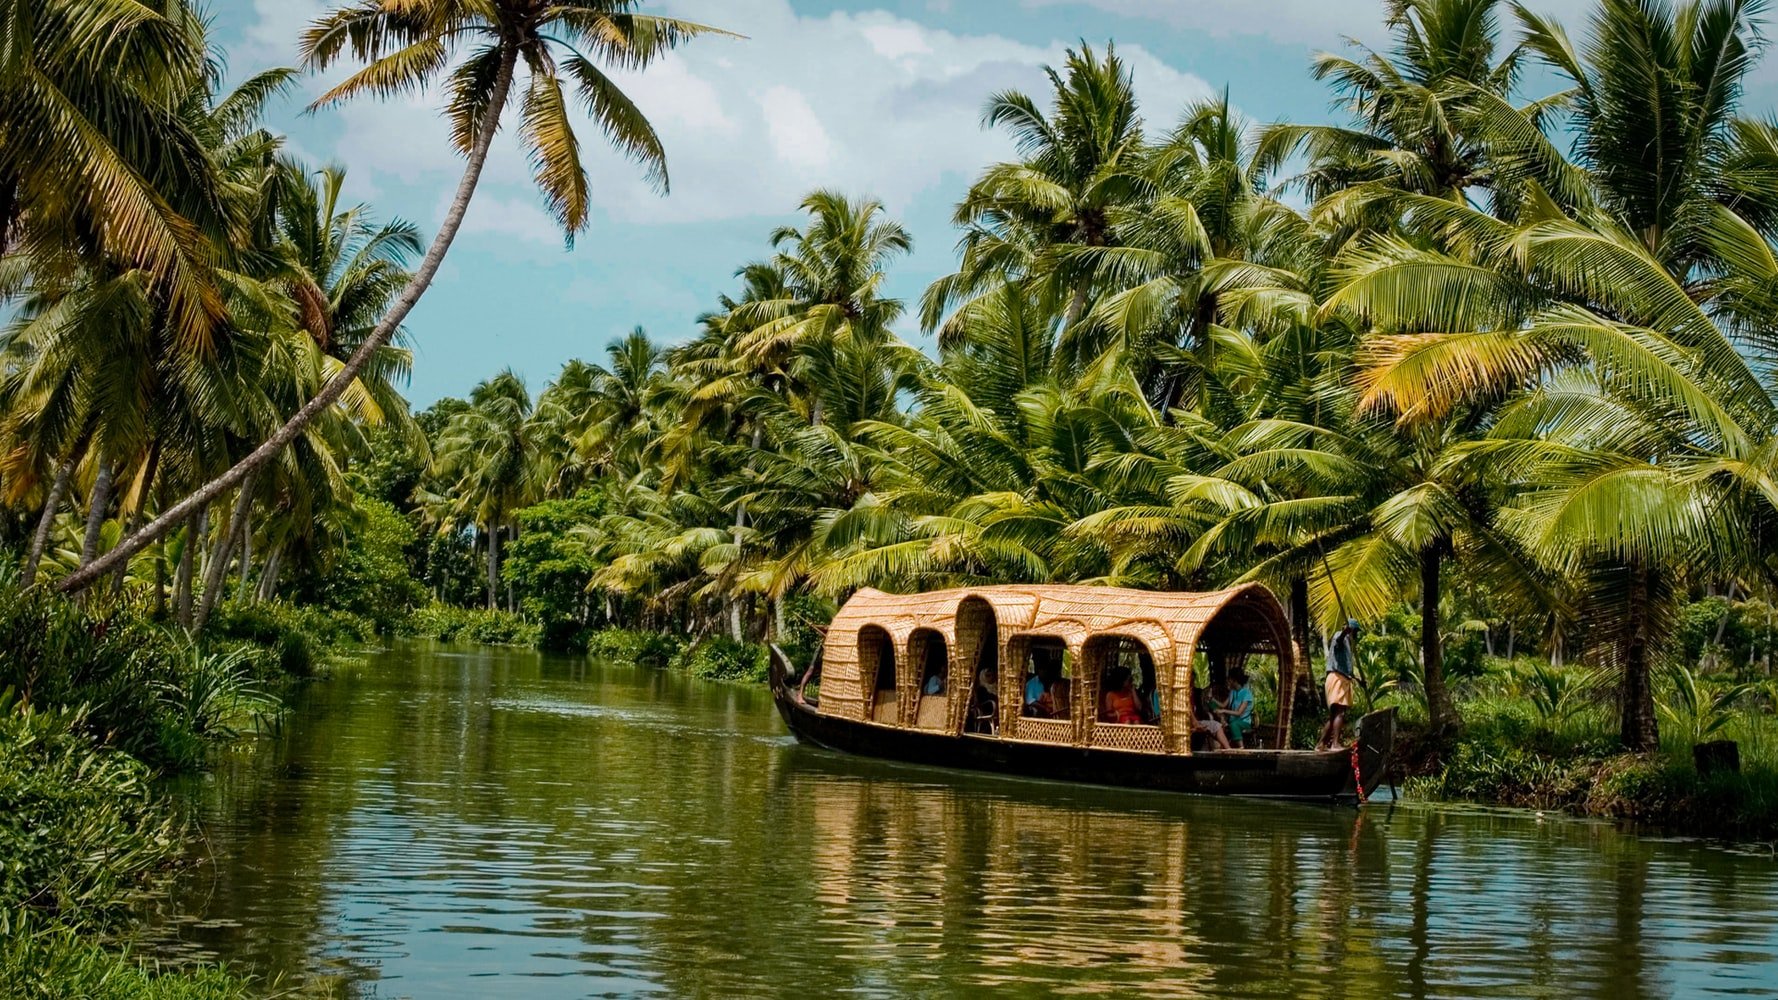 House boats in Kerala